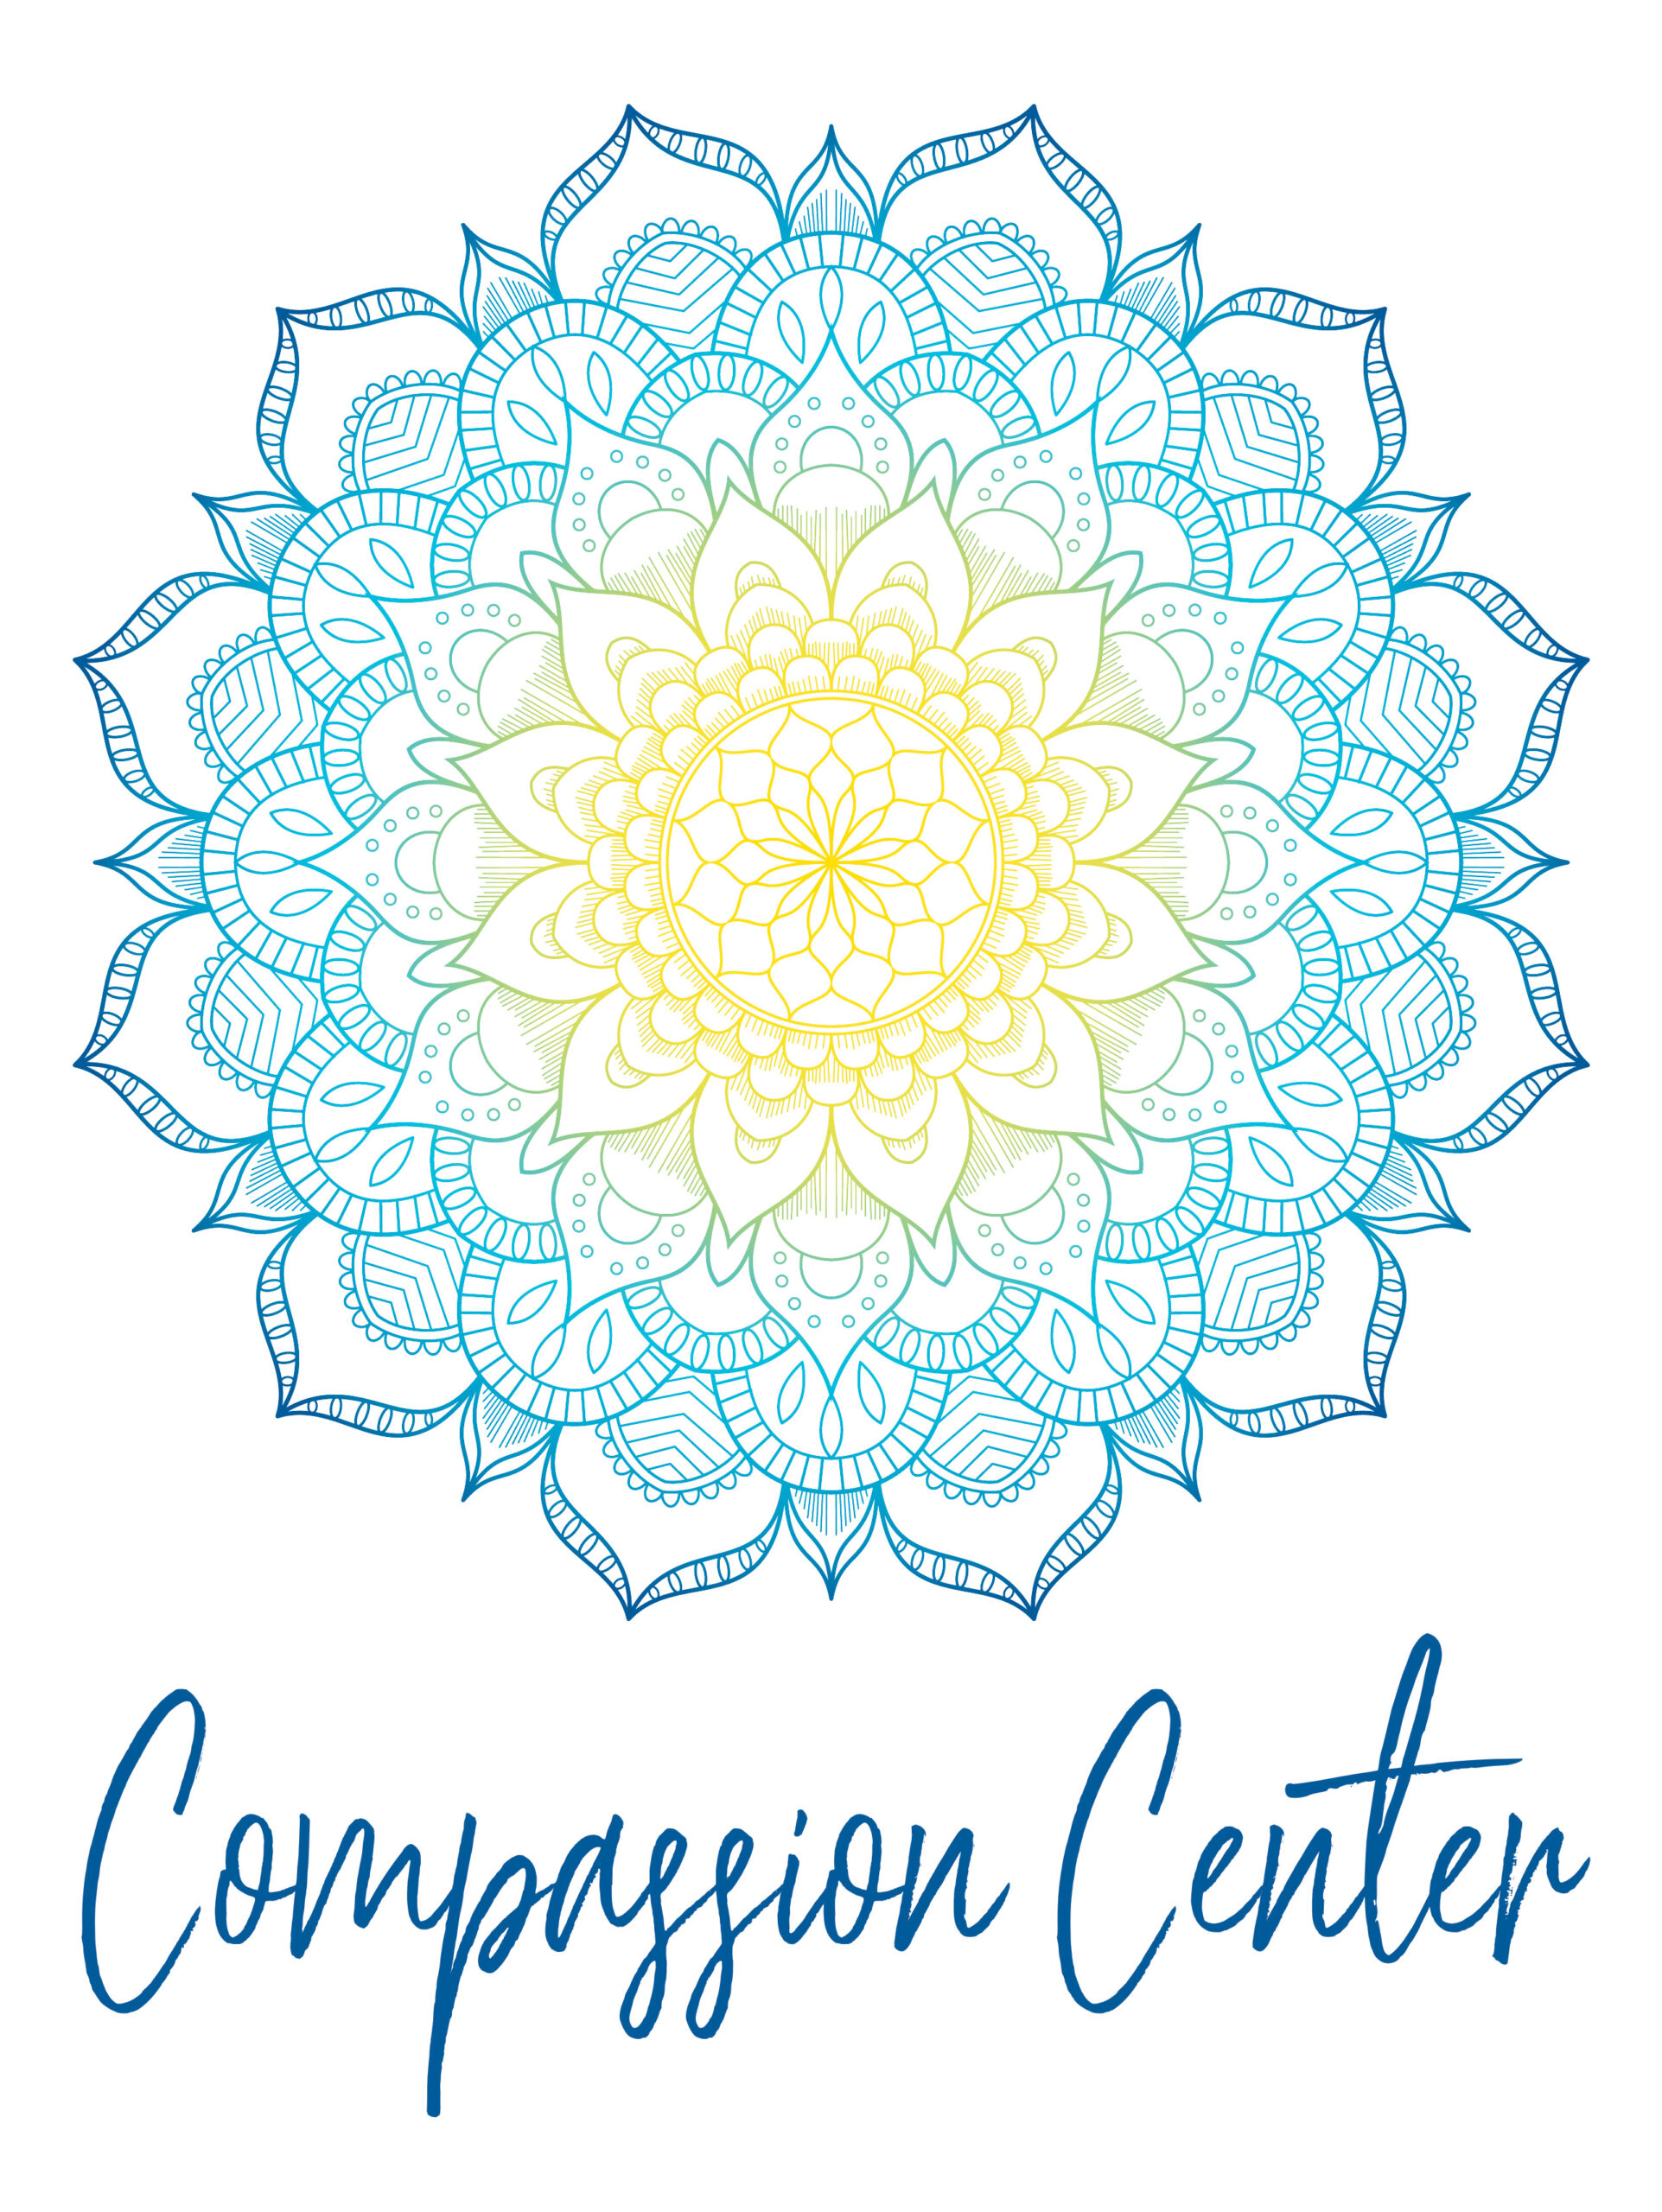 Compassion Center